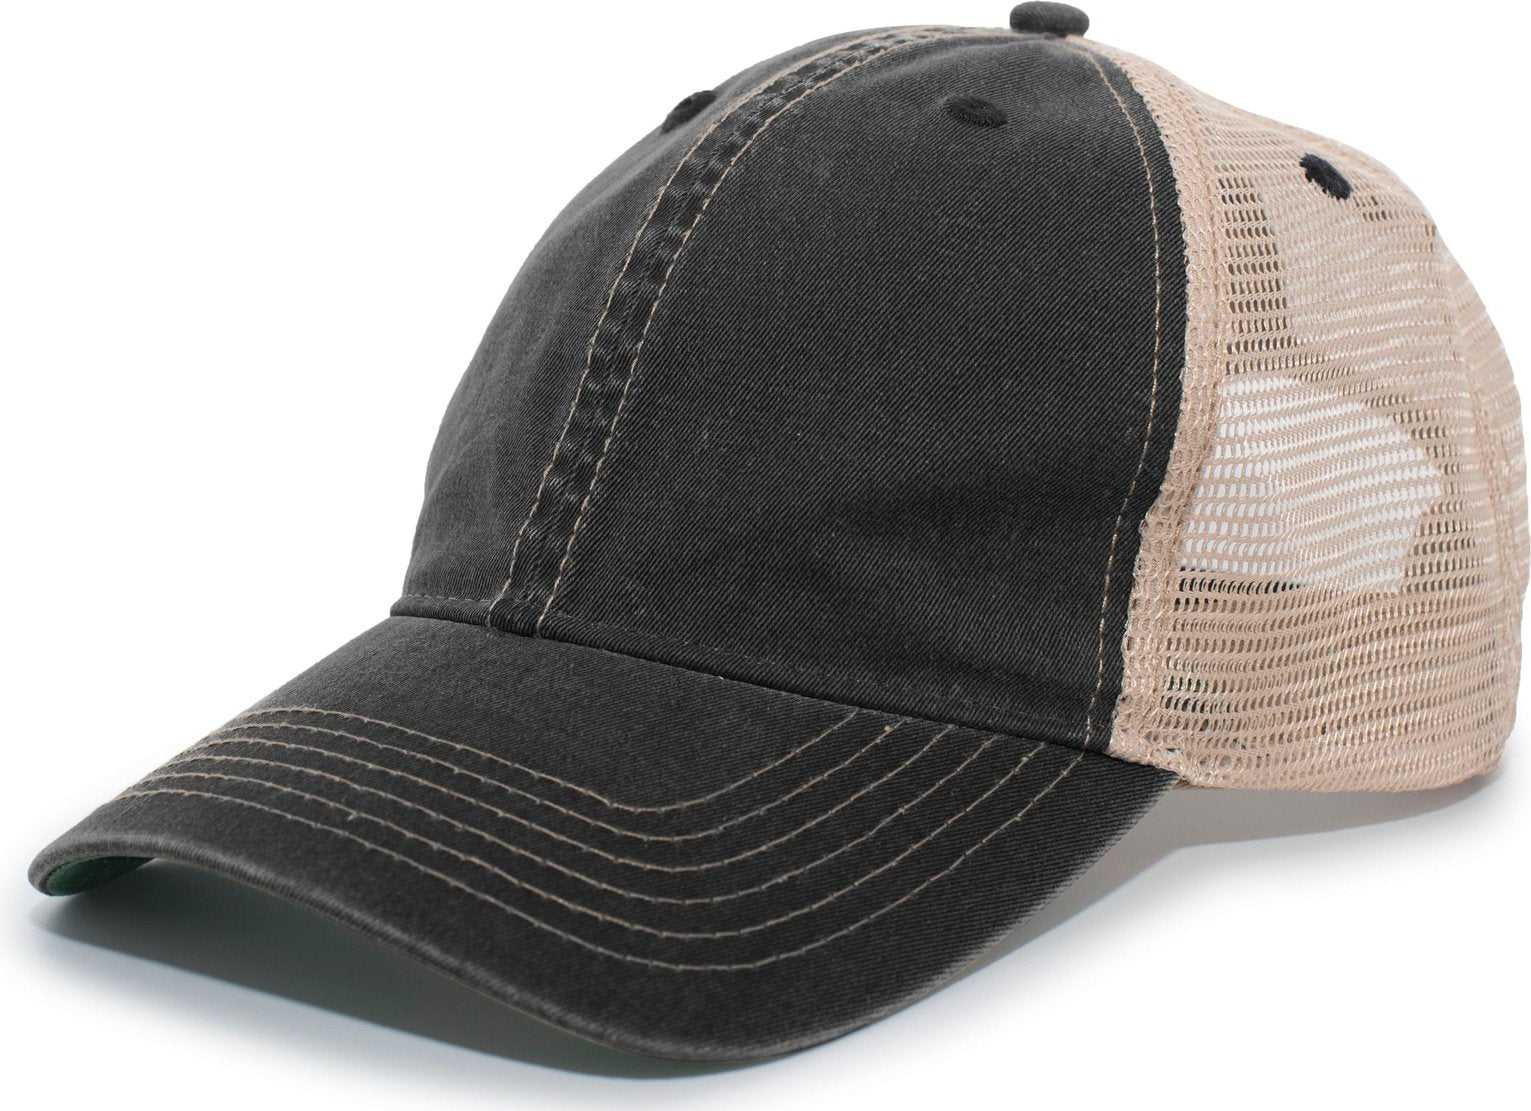 Pacific Headwear V37 Broken-In Trucker Mesh Snapback Cap - Black Tan - HIT a Double